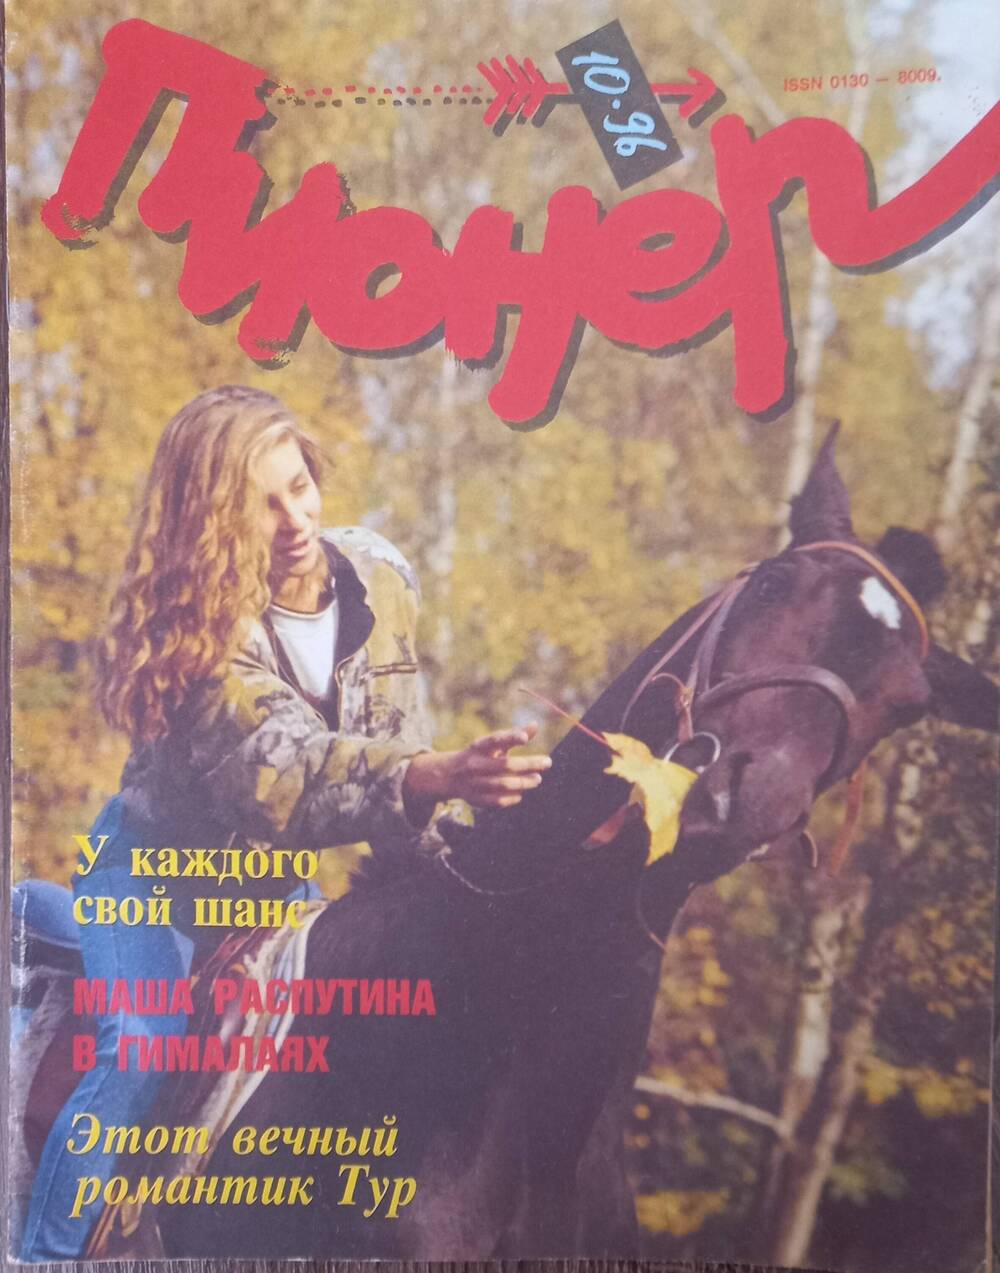 Журнал  Пионер №10.1996 год. Ежемесячный иллюстрированный детский журнал.